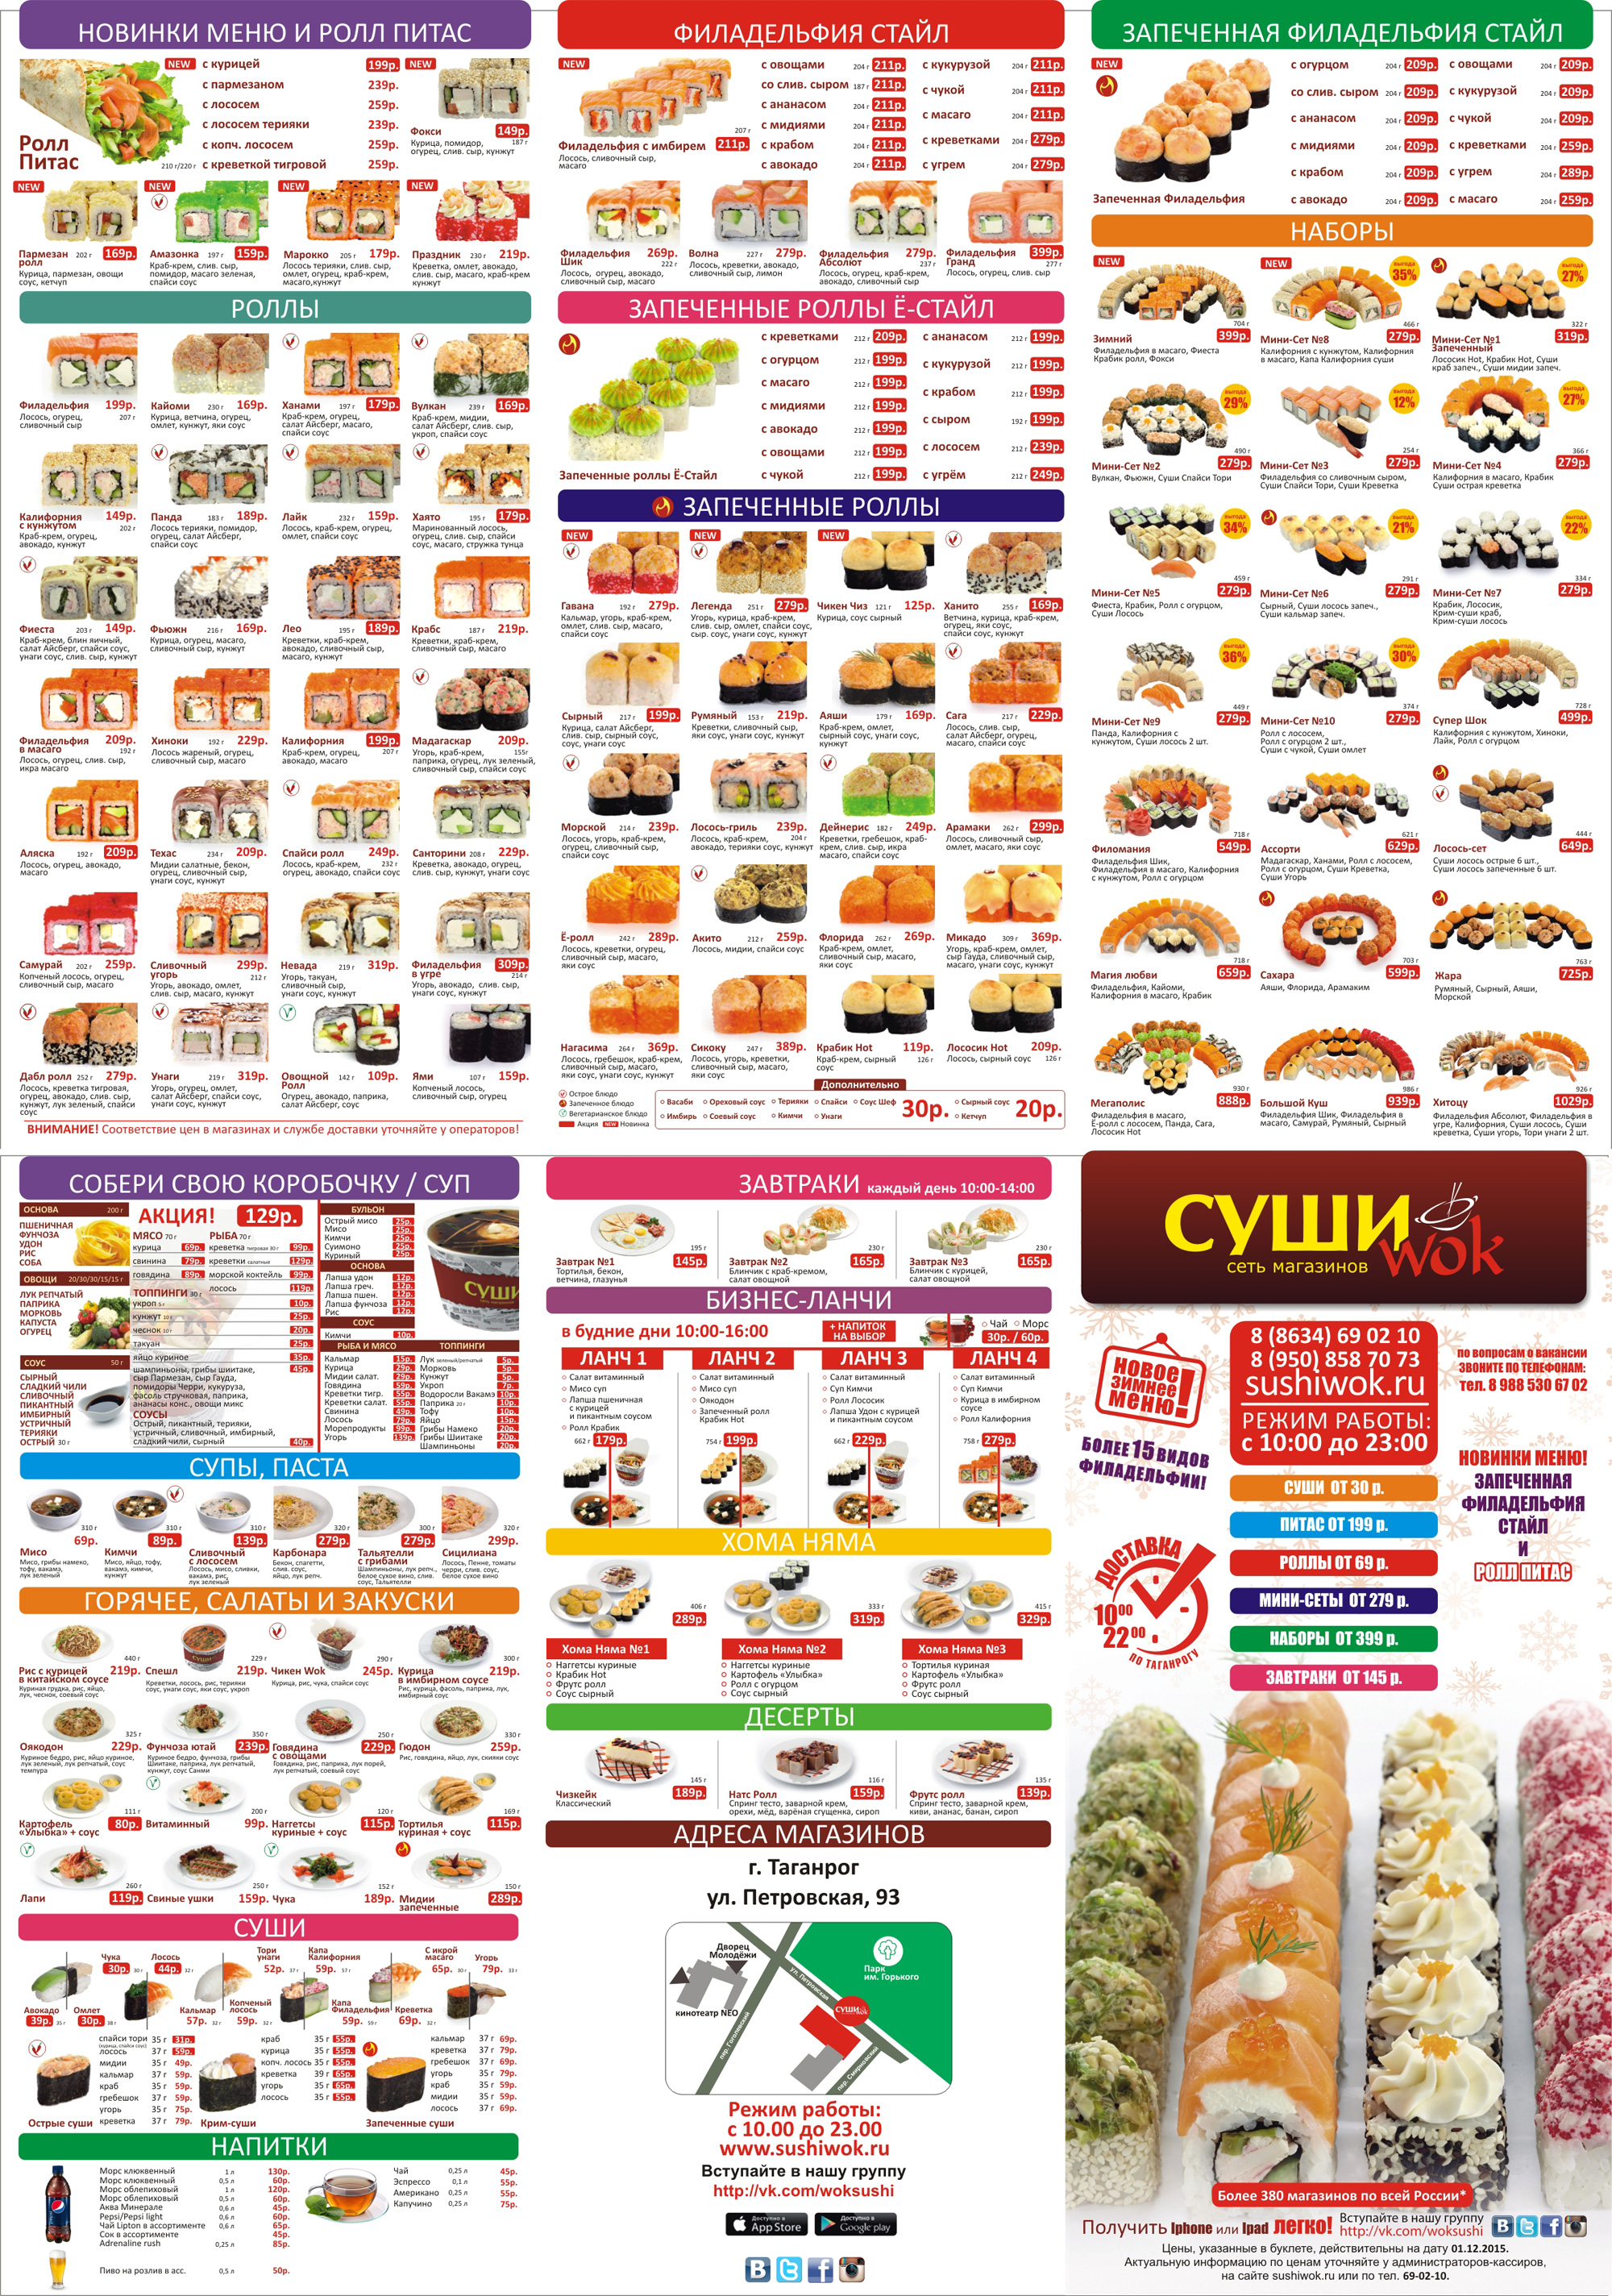 Суши вок санкт петербург меню наборы акции цены (120) фото